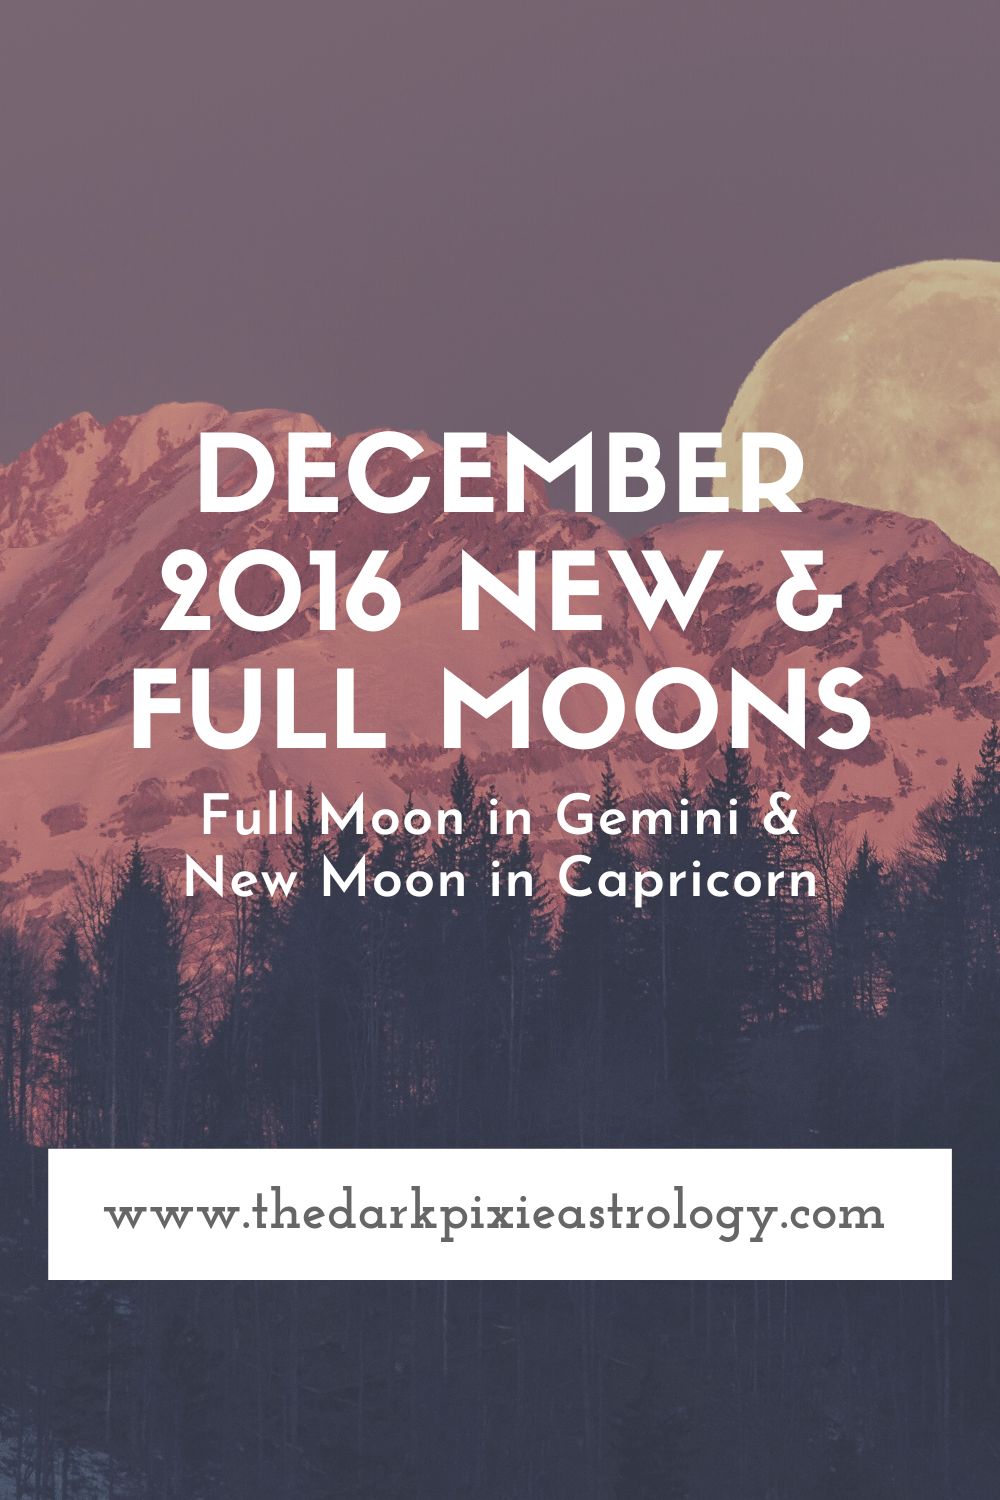 December 2016 New & Full Moons - The Dark Pixie Astrology